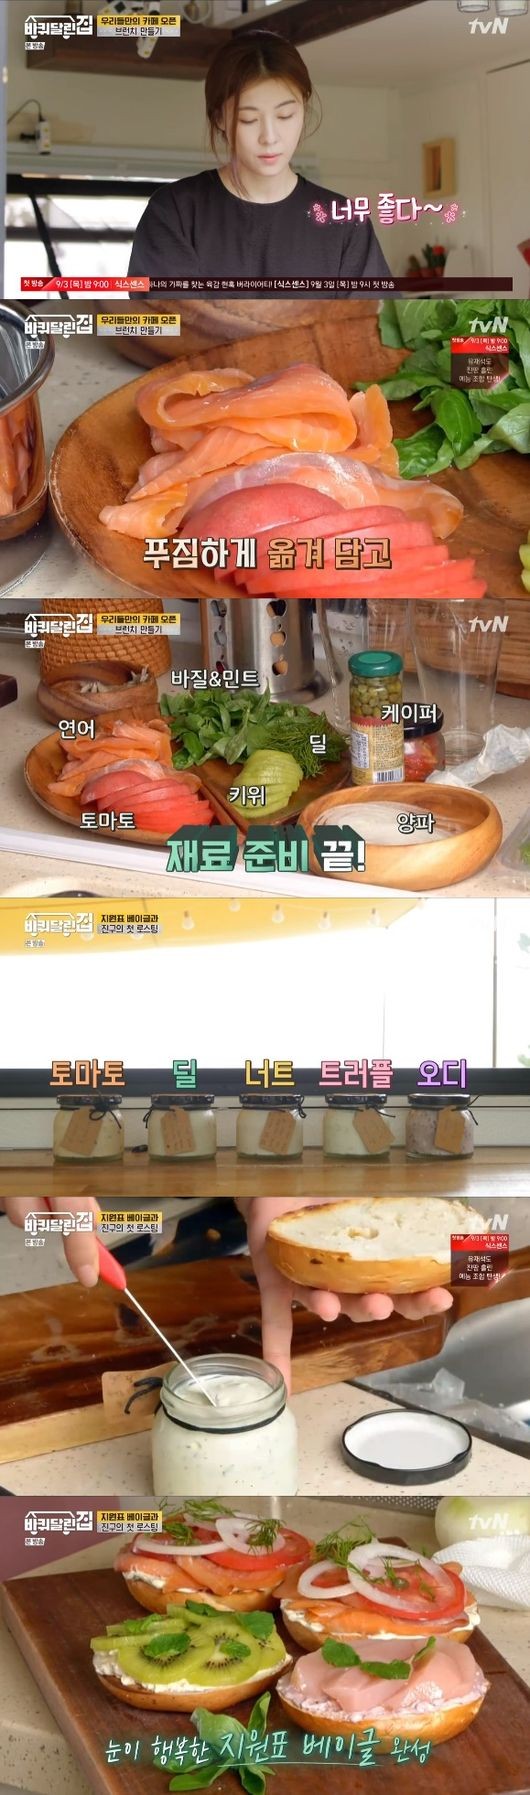 27일 방송된 tvN 예능 프로그램 '바퀴 달린 집'에 출연한 배우 하지원이 수제 크림치즈를 곁들인 베이글을 만들고 있는 모습. 사진=tvN '바퀴 달린 집' 방송 캡처